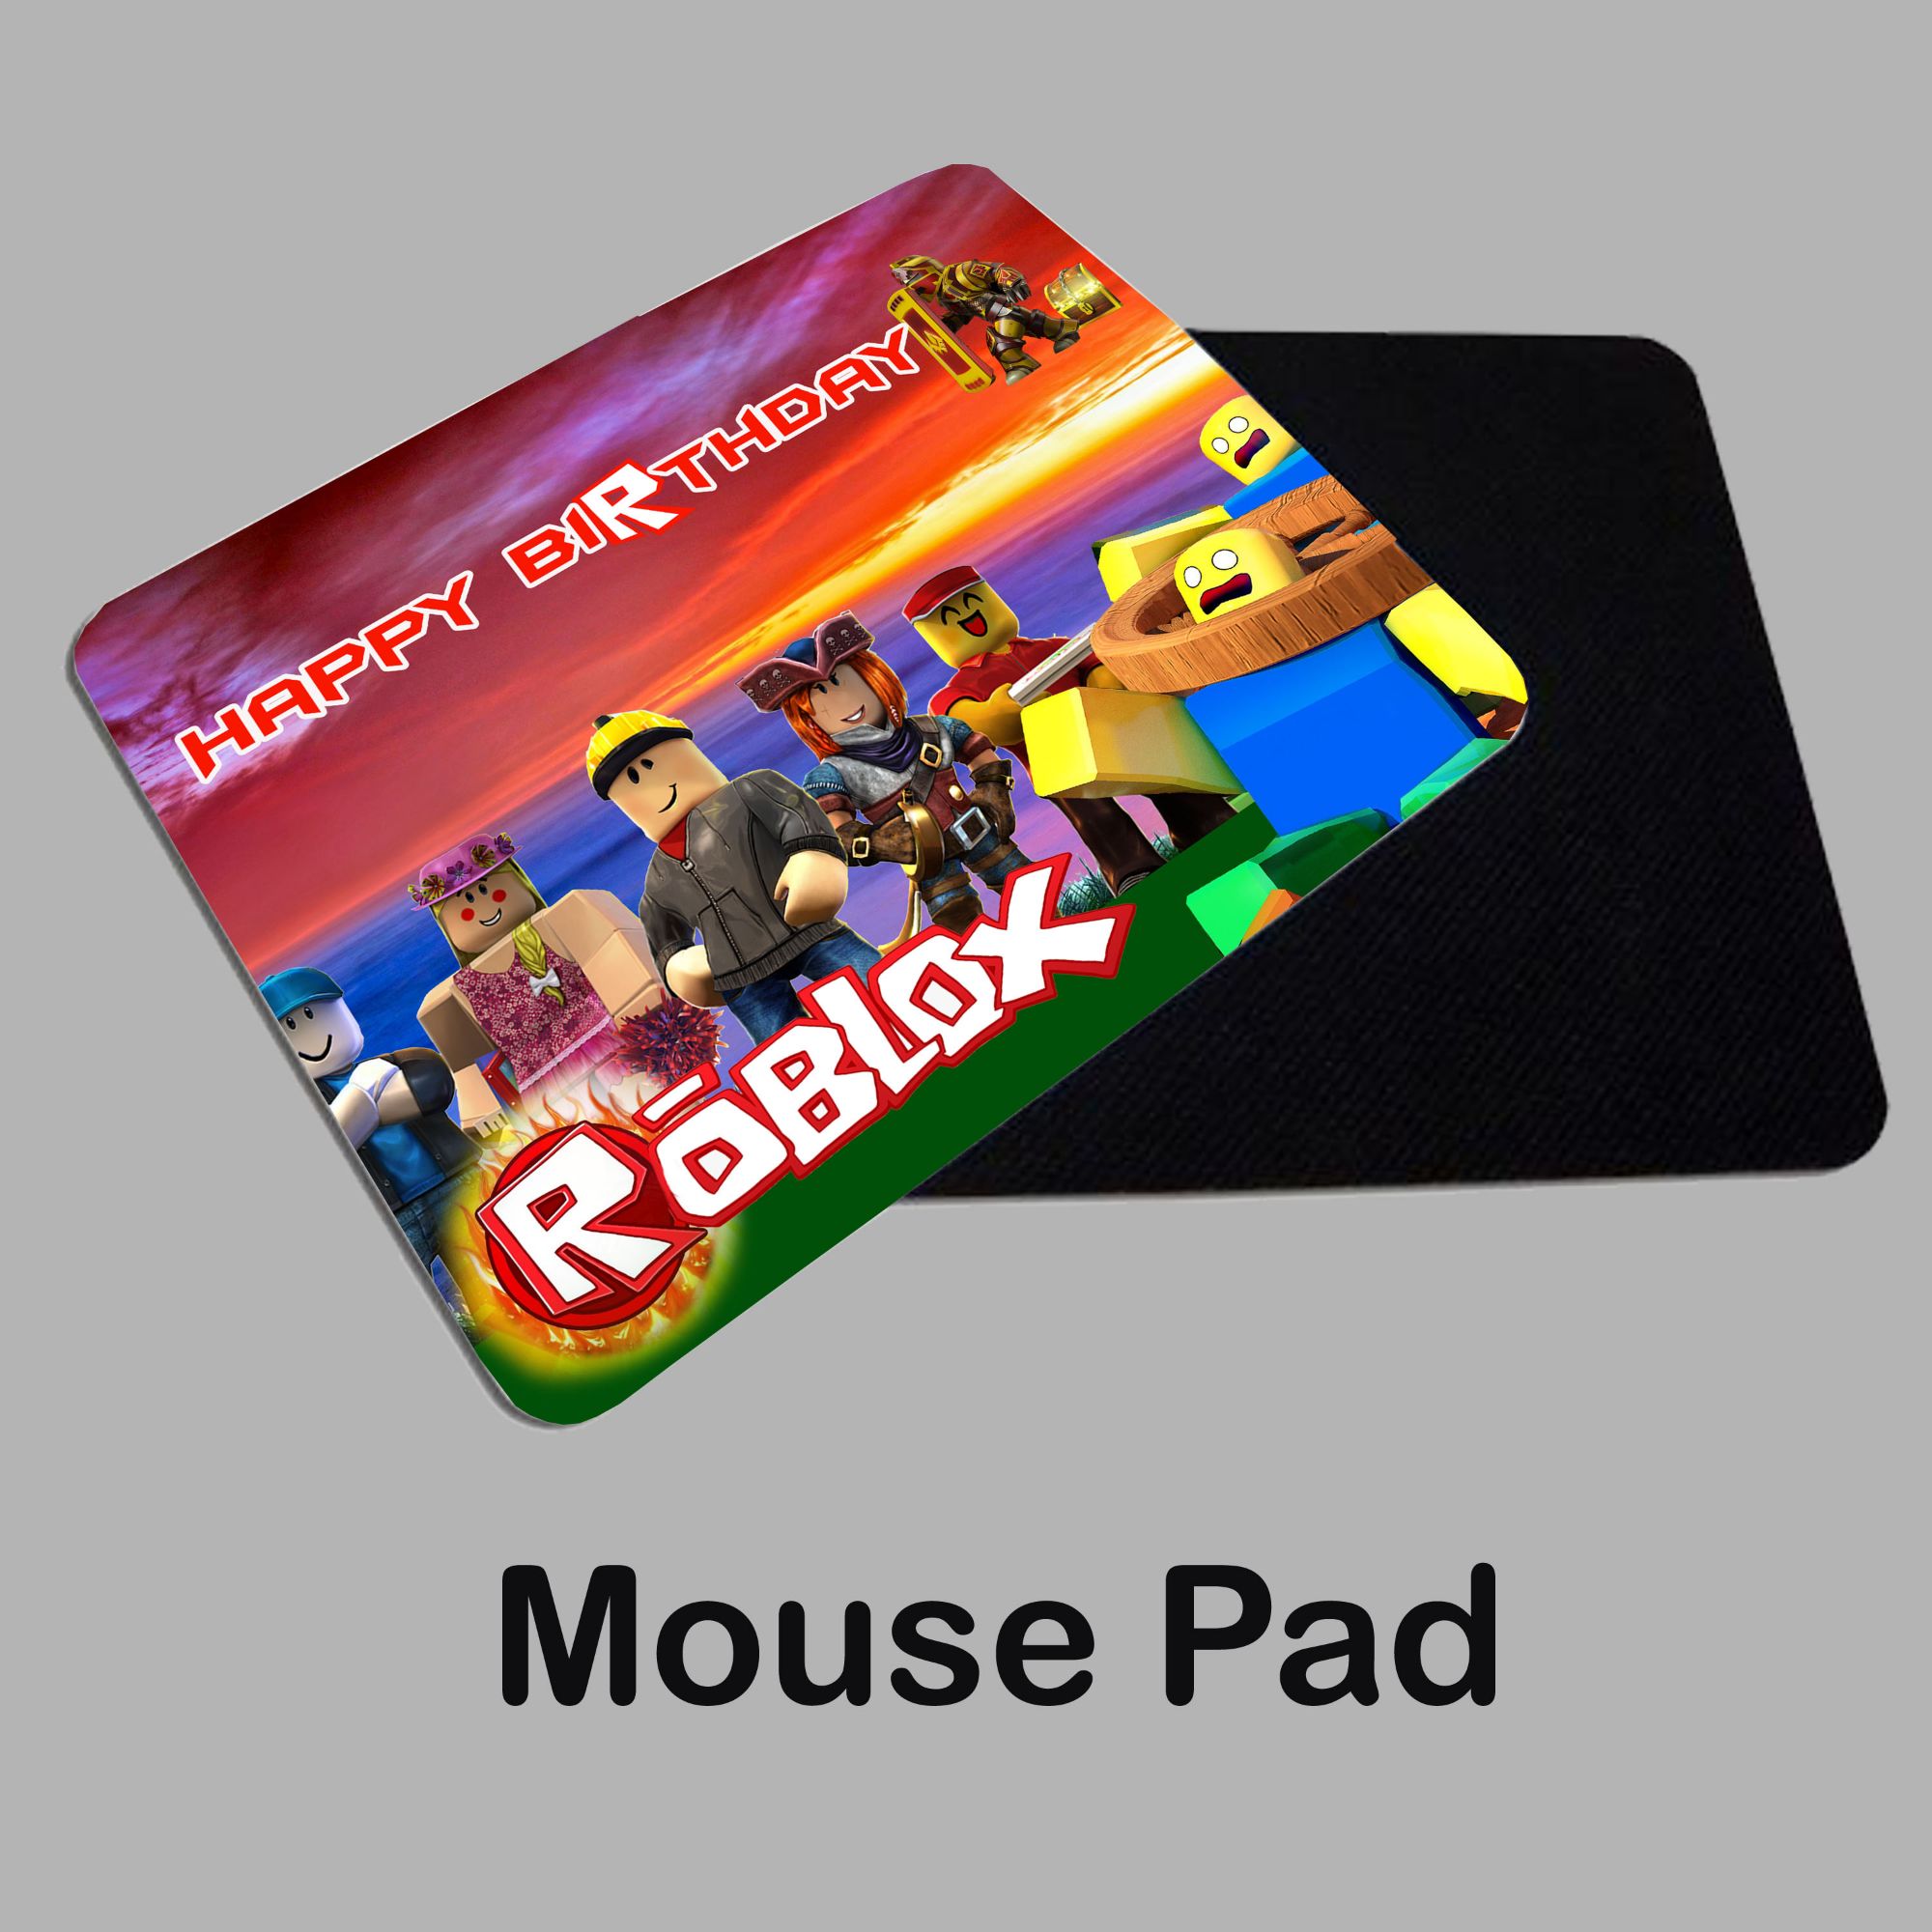 Mouse Pad Emborrachado Personalizado Personagem Roblox